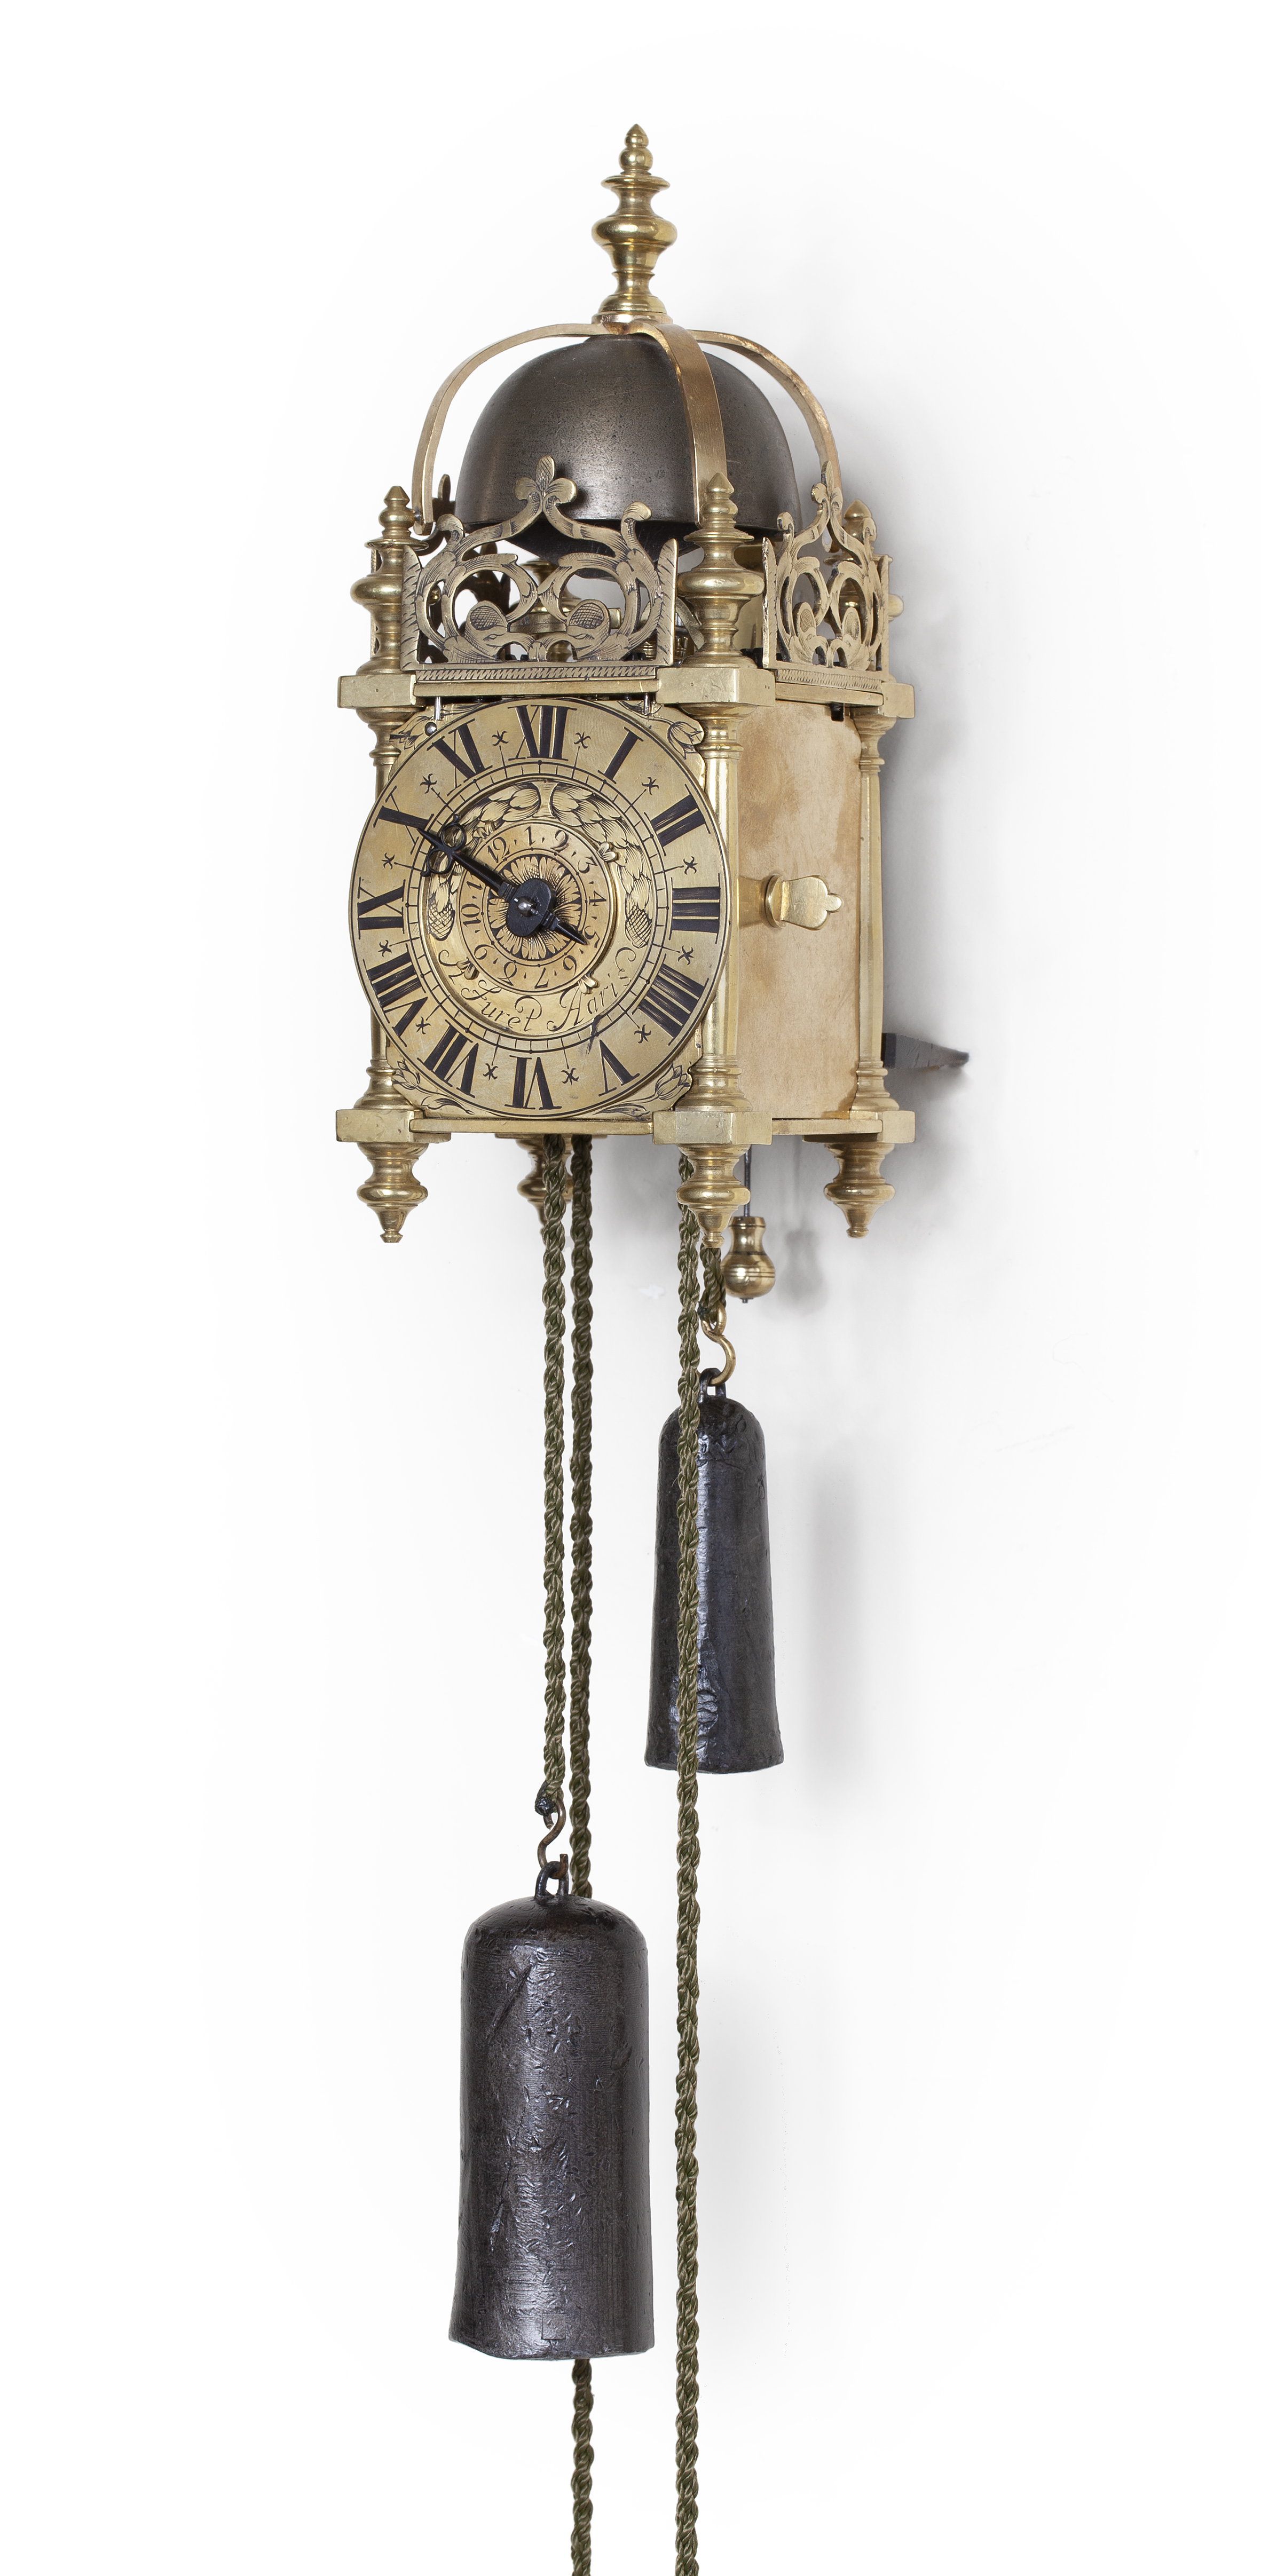 Paard Duidelijk maken rundvlees Collectie antieke klokken lantaarnklok collection antique lantern clock